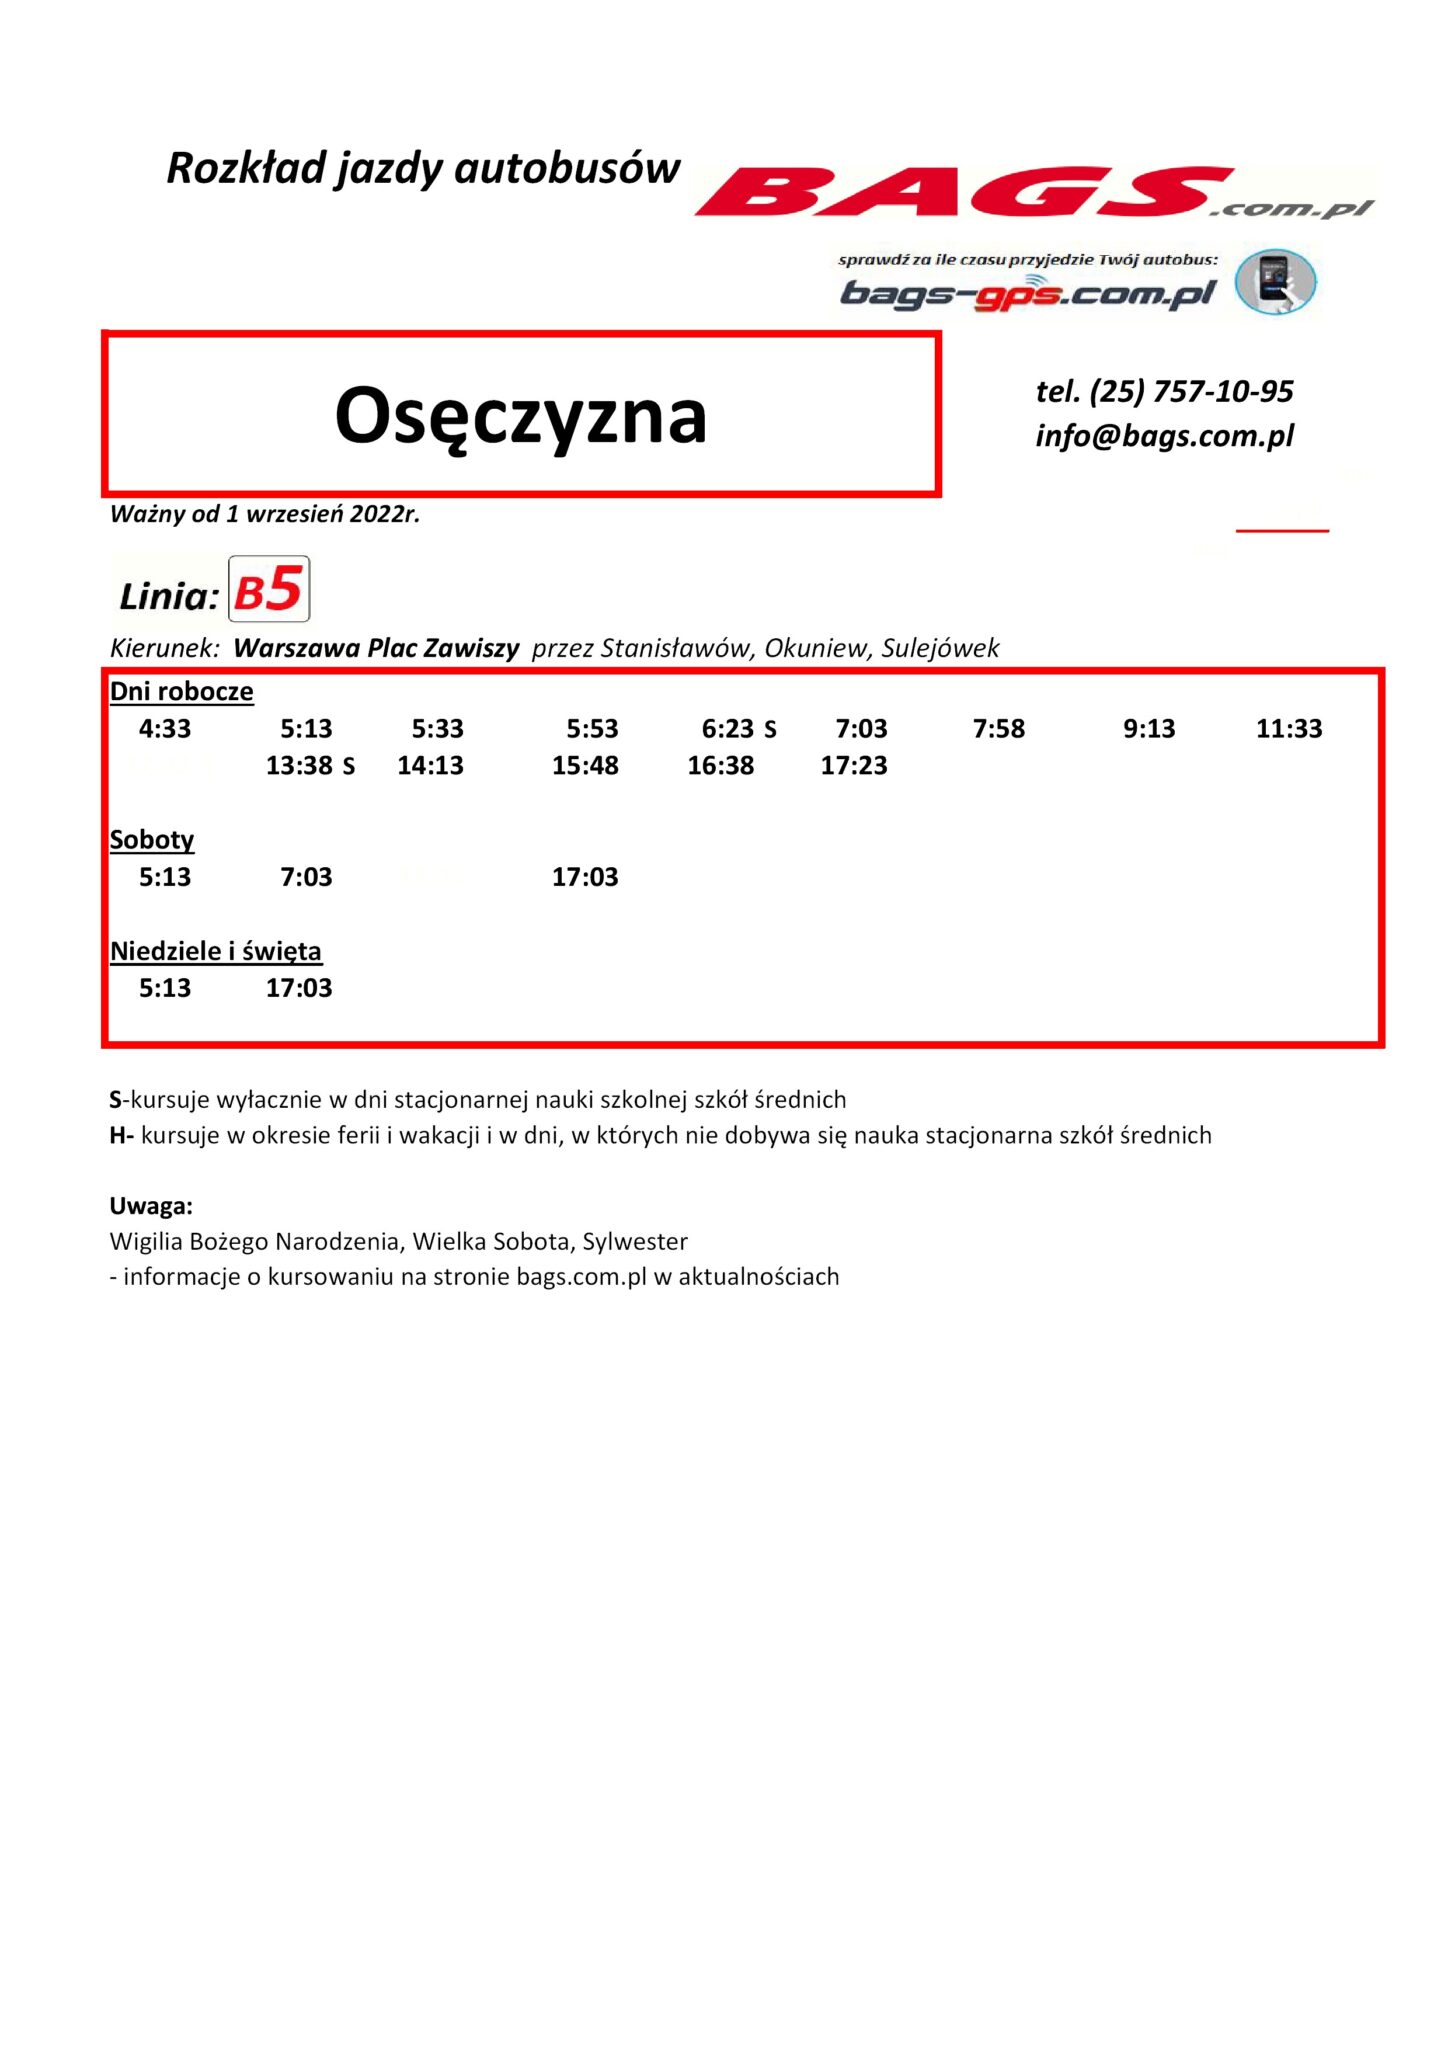 Oseczyzna-1-1-1448x2048